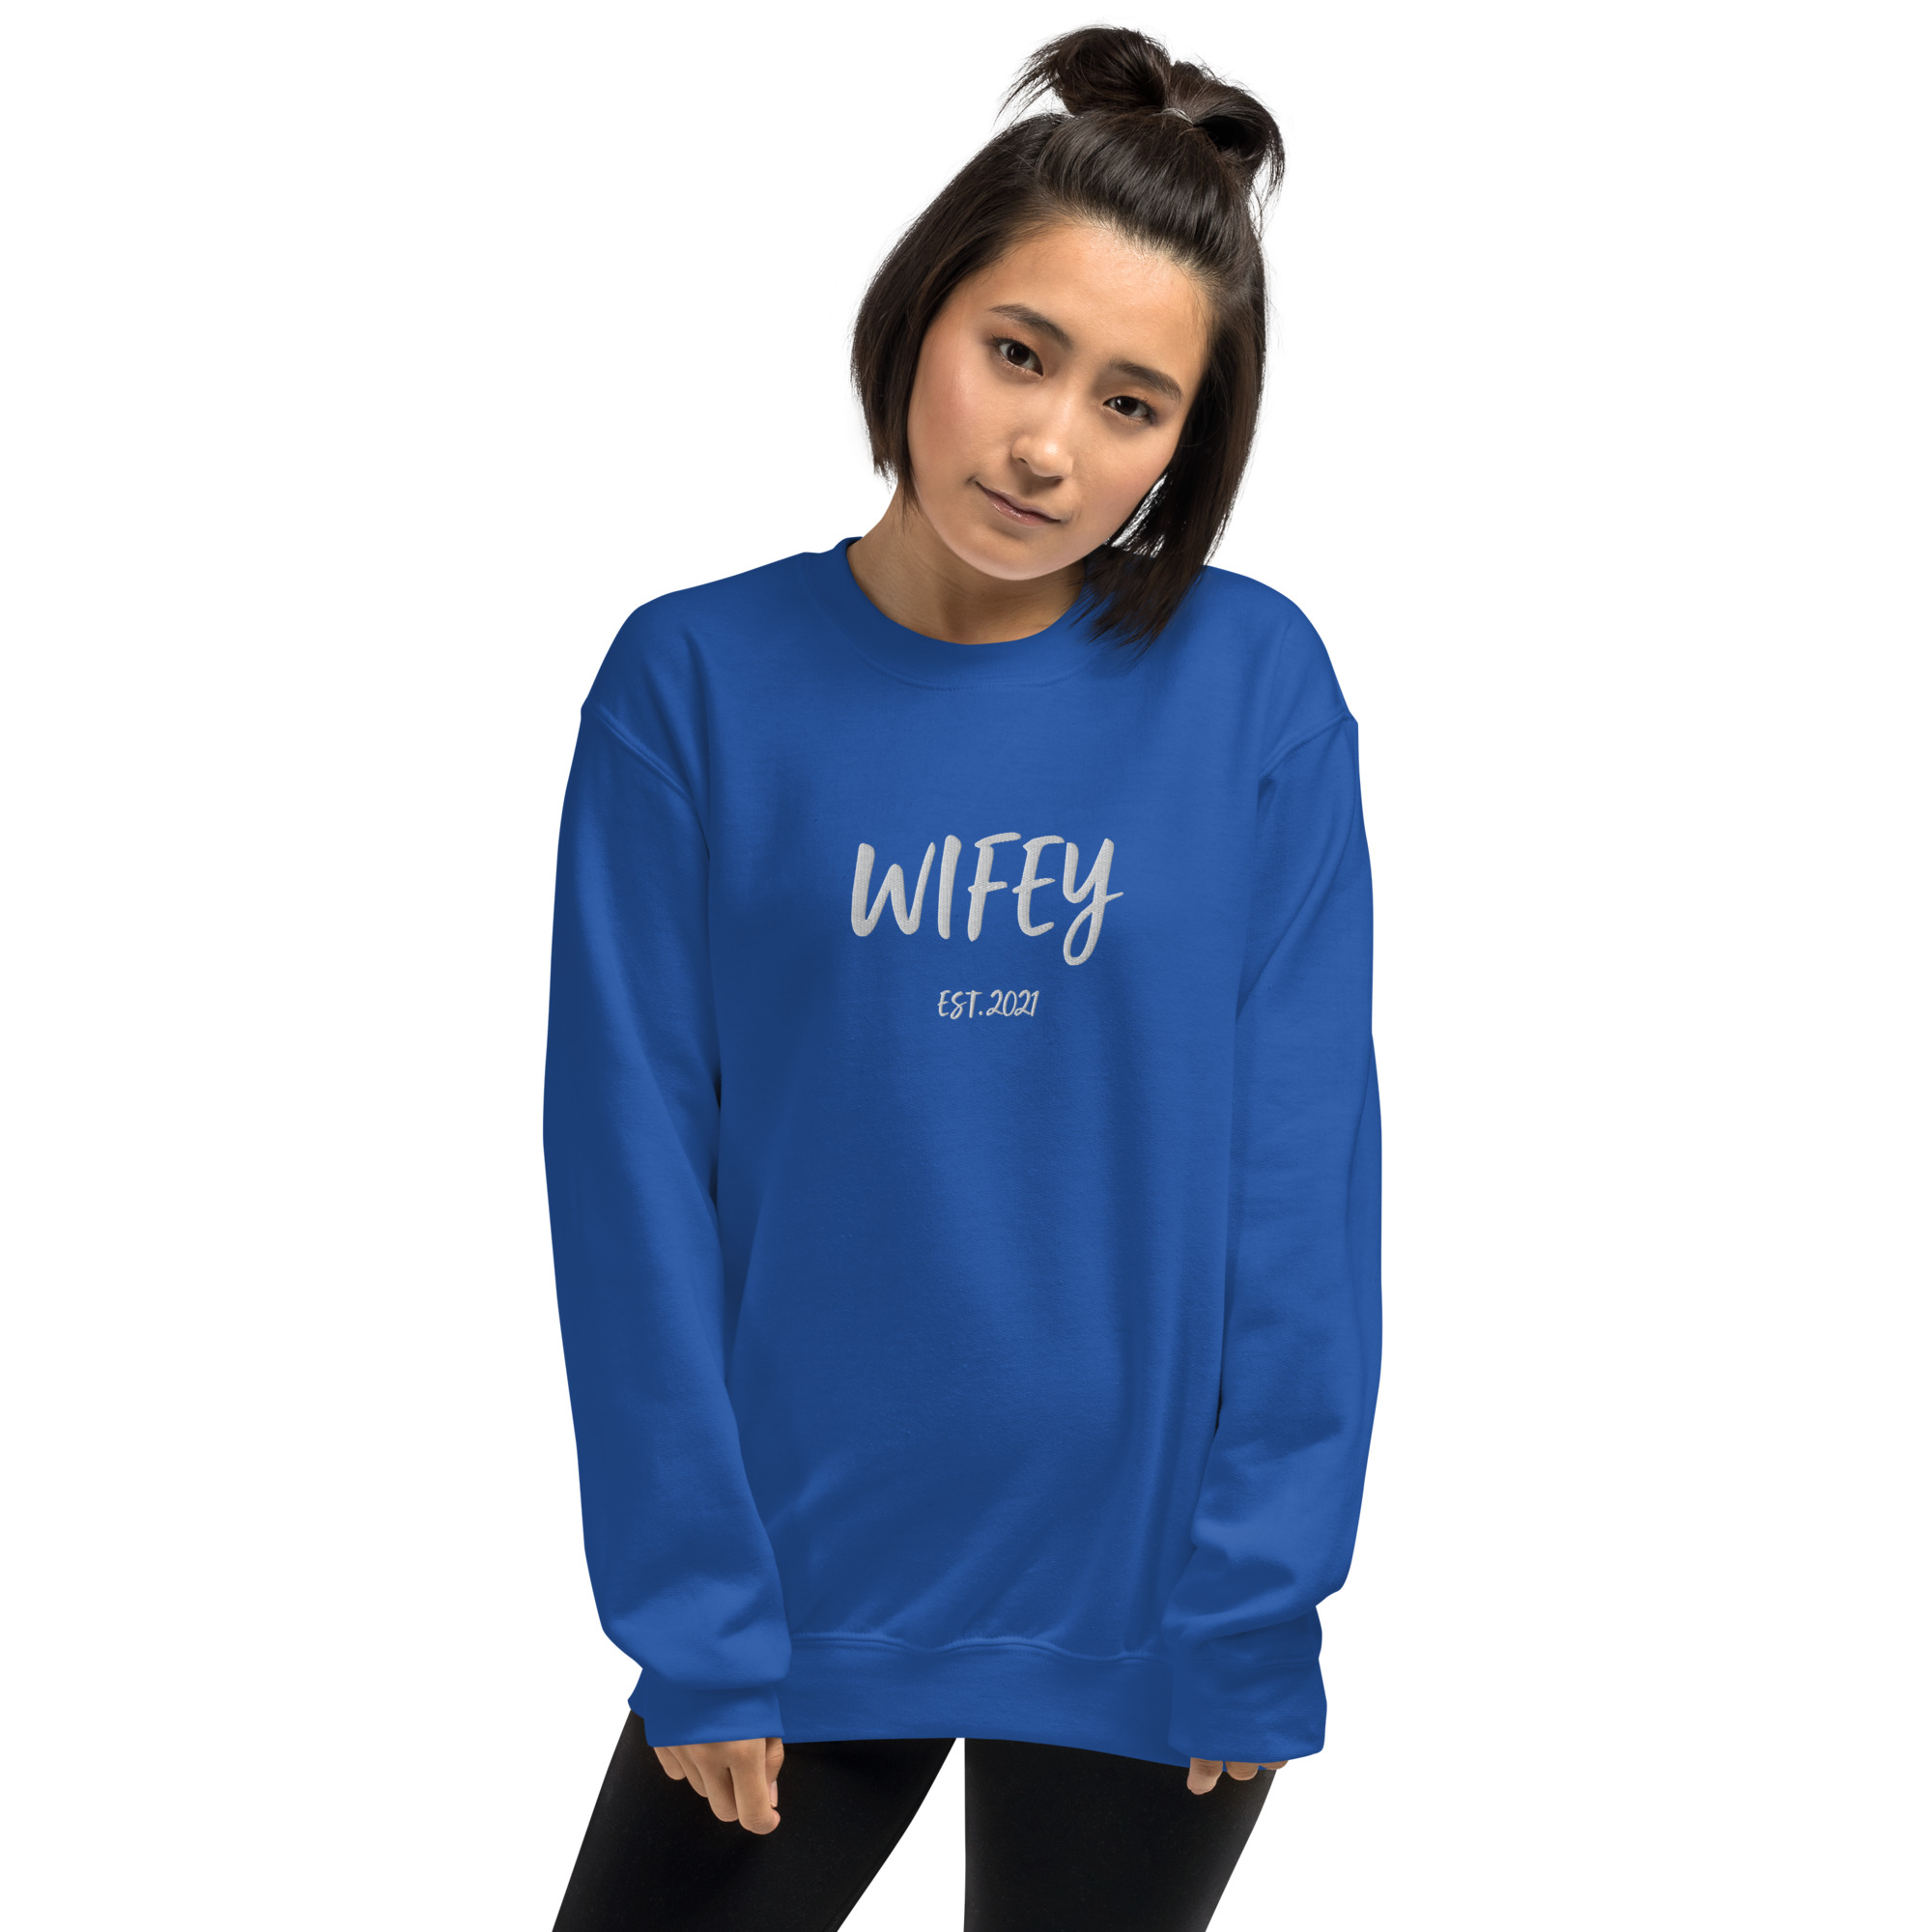 "wifey est." women's sweatshirt